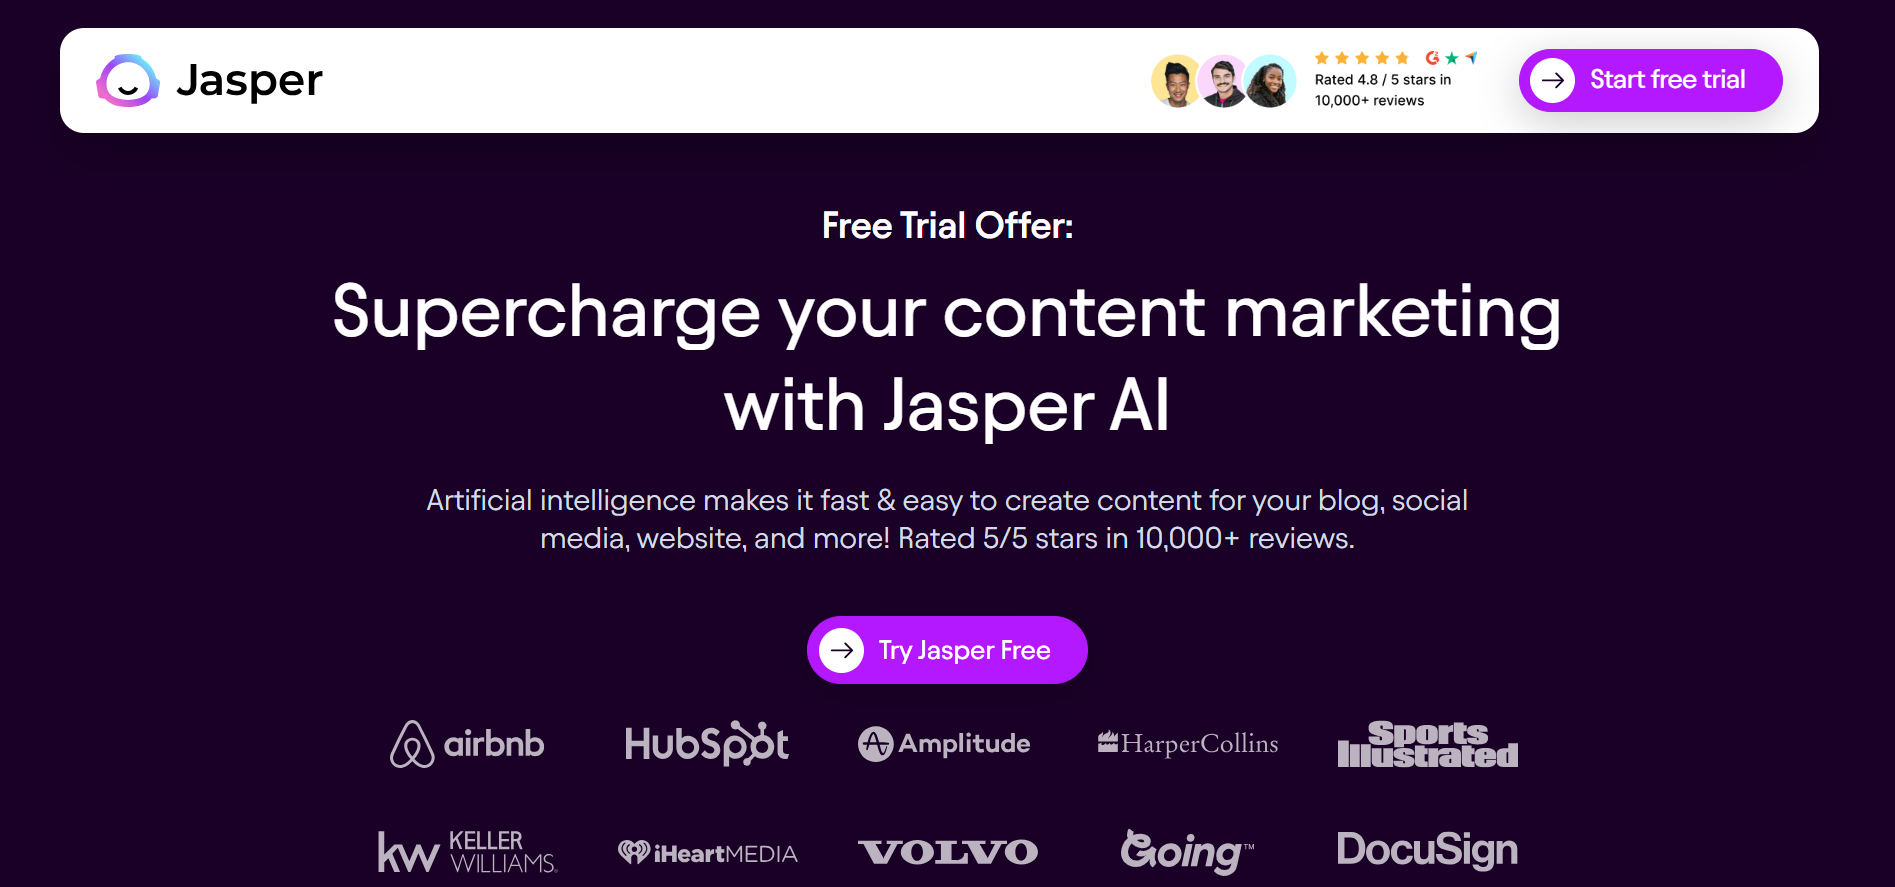 Jasper Free Trial